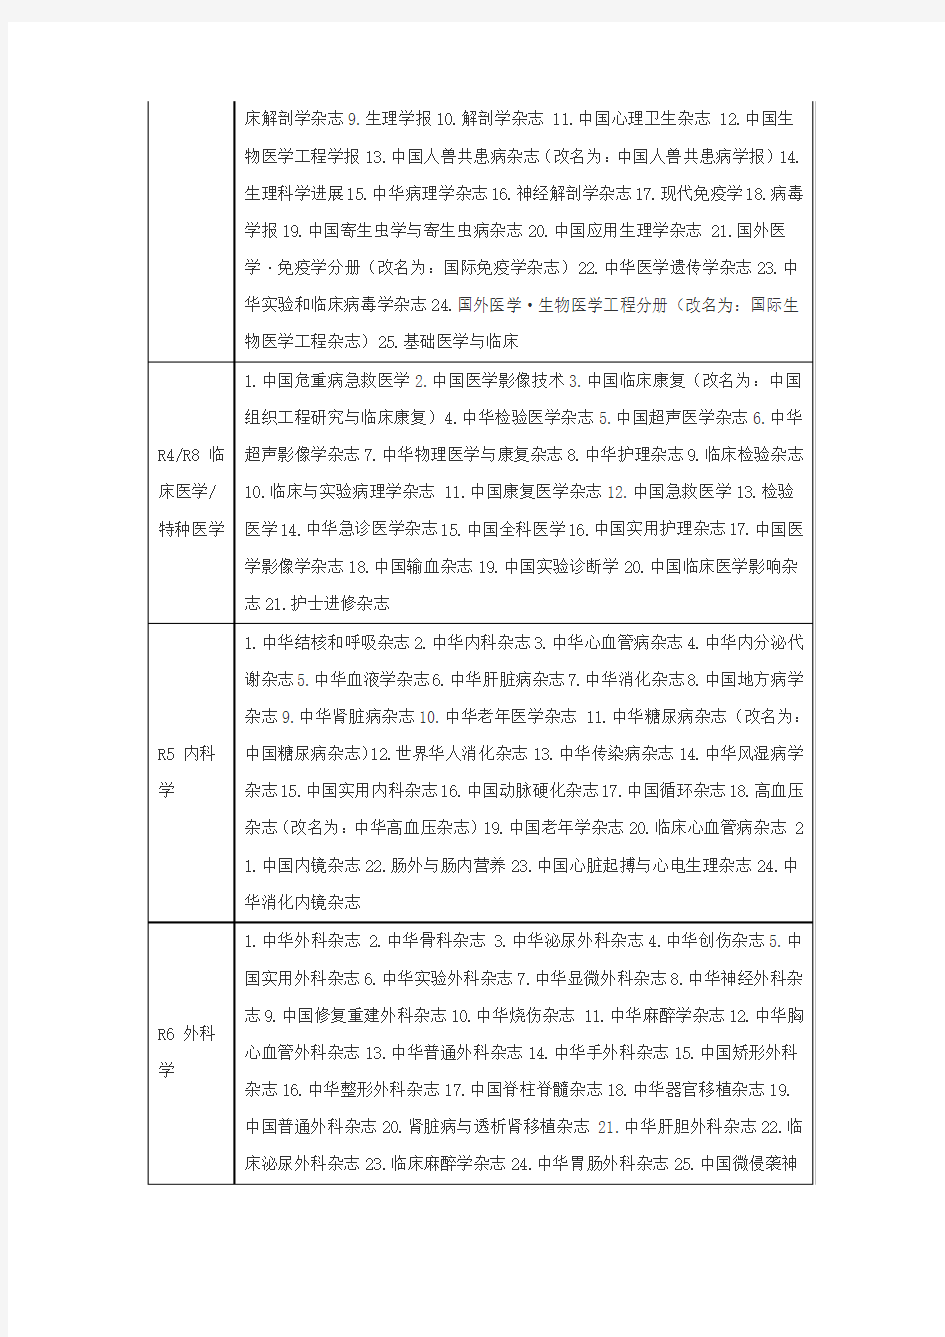 北大中文核心期刊目录-2008年版